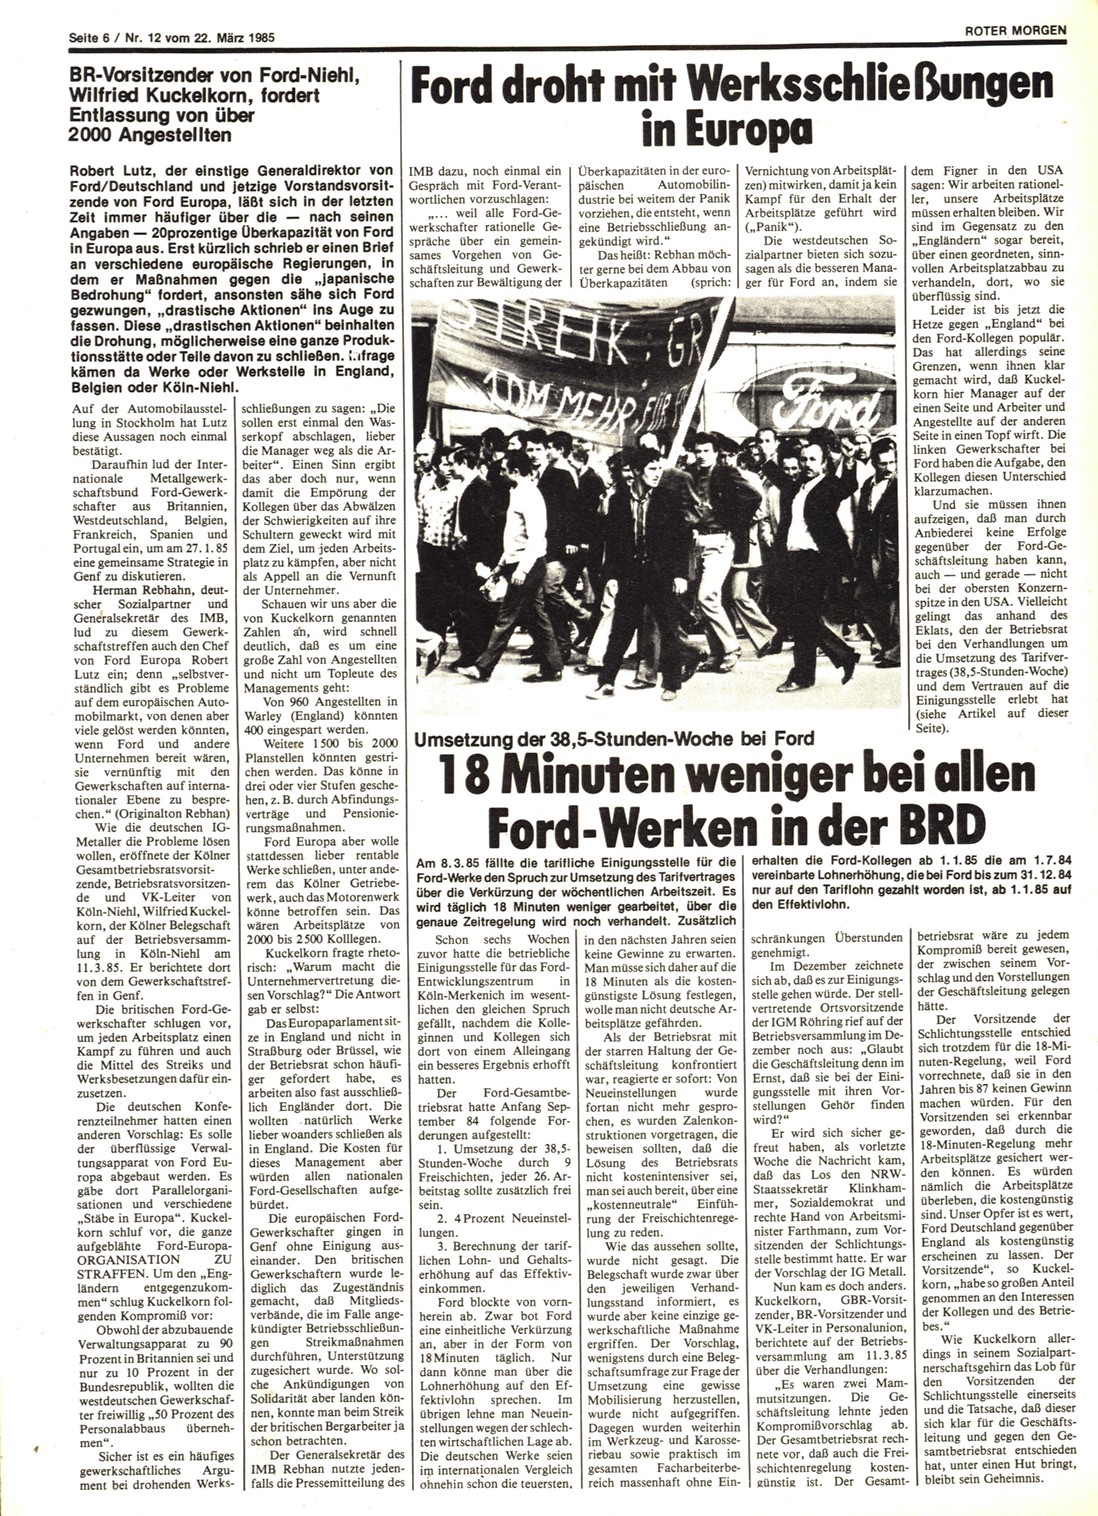 Roter Morgen, 19. Jg., 22. März 1985, Nr. 12, Seite 6